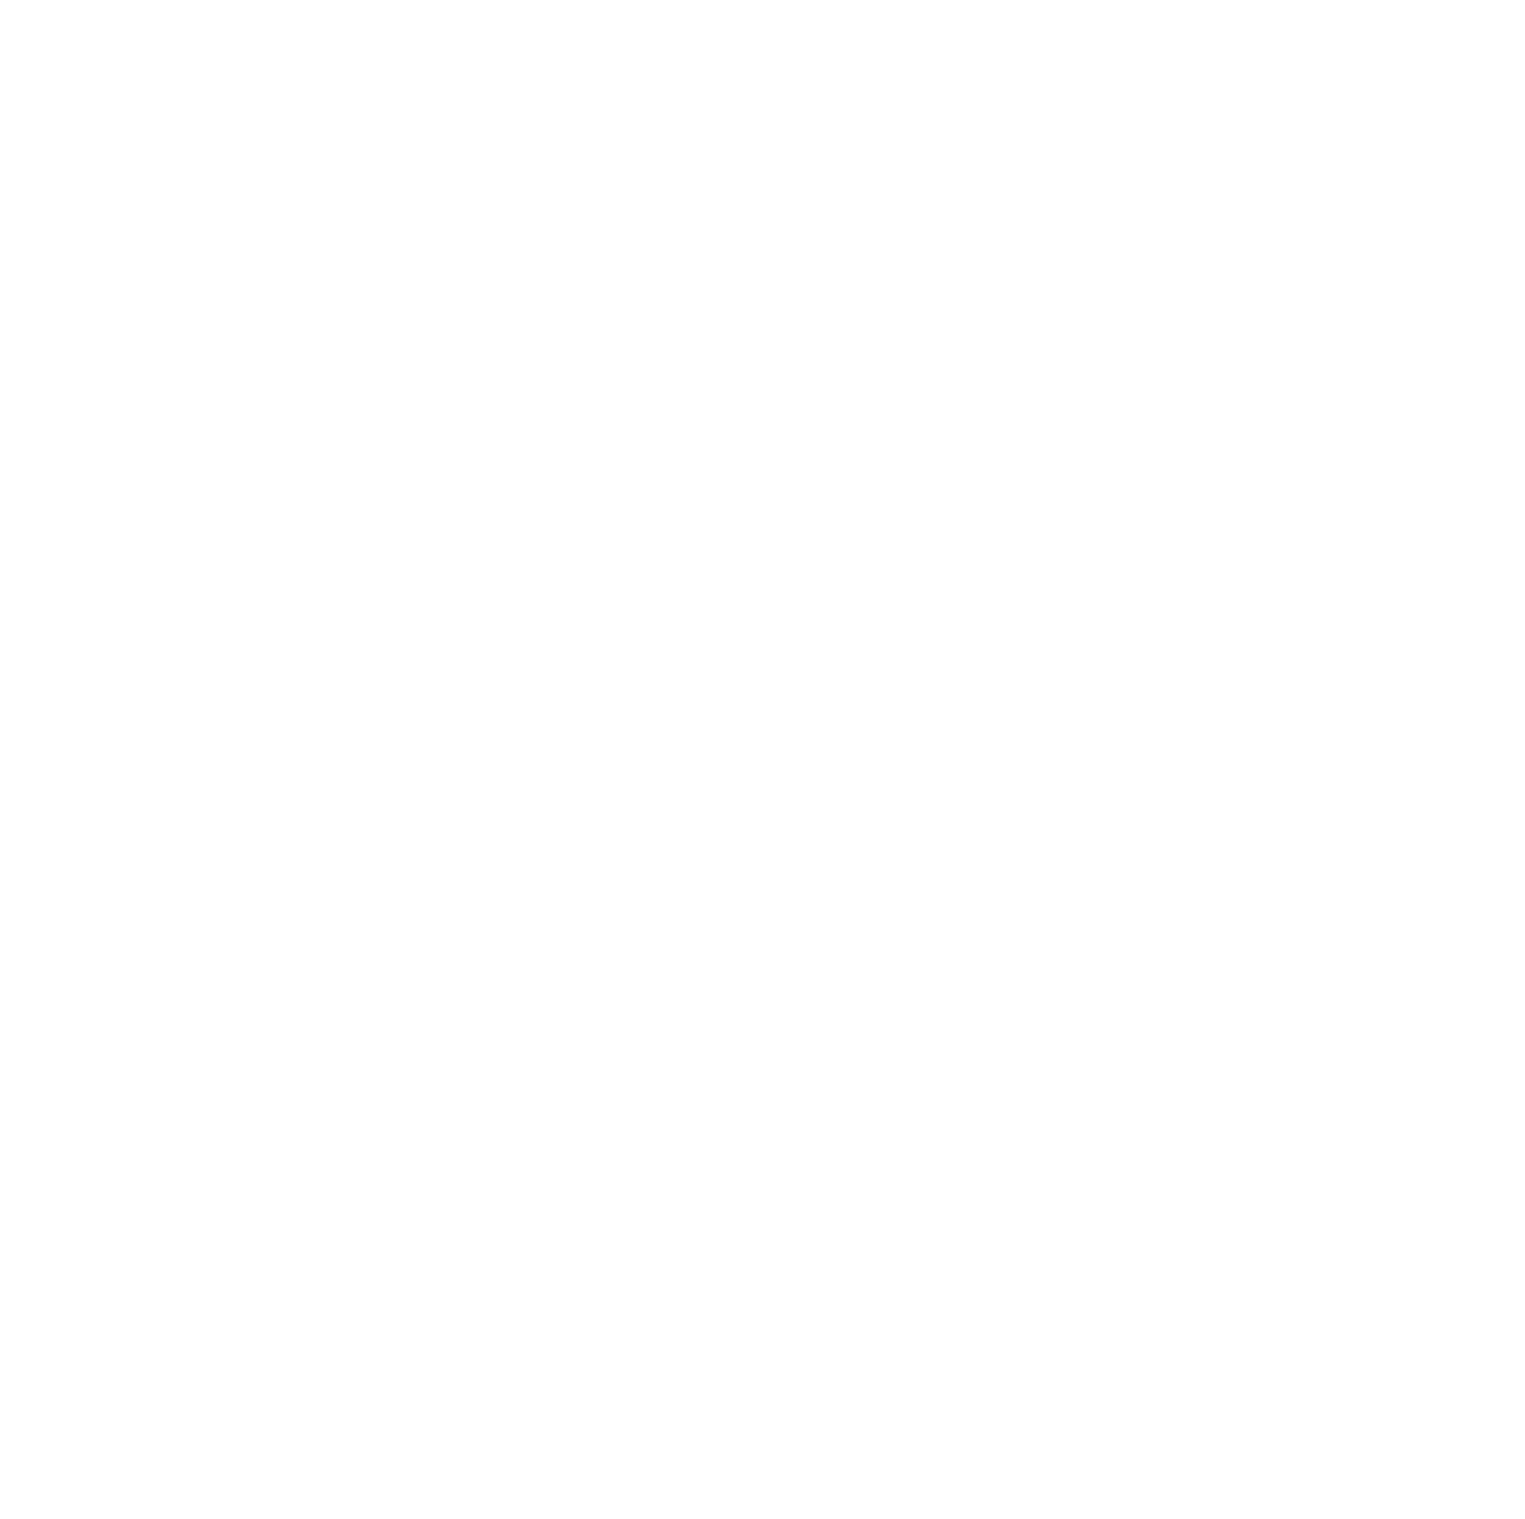 AMTD IDEA Group logo for dark backgrounds (transparent PNG)